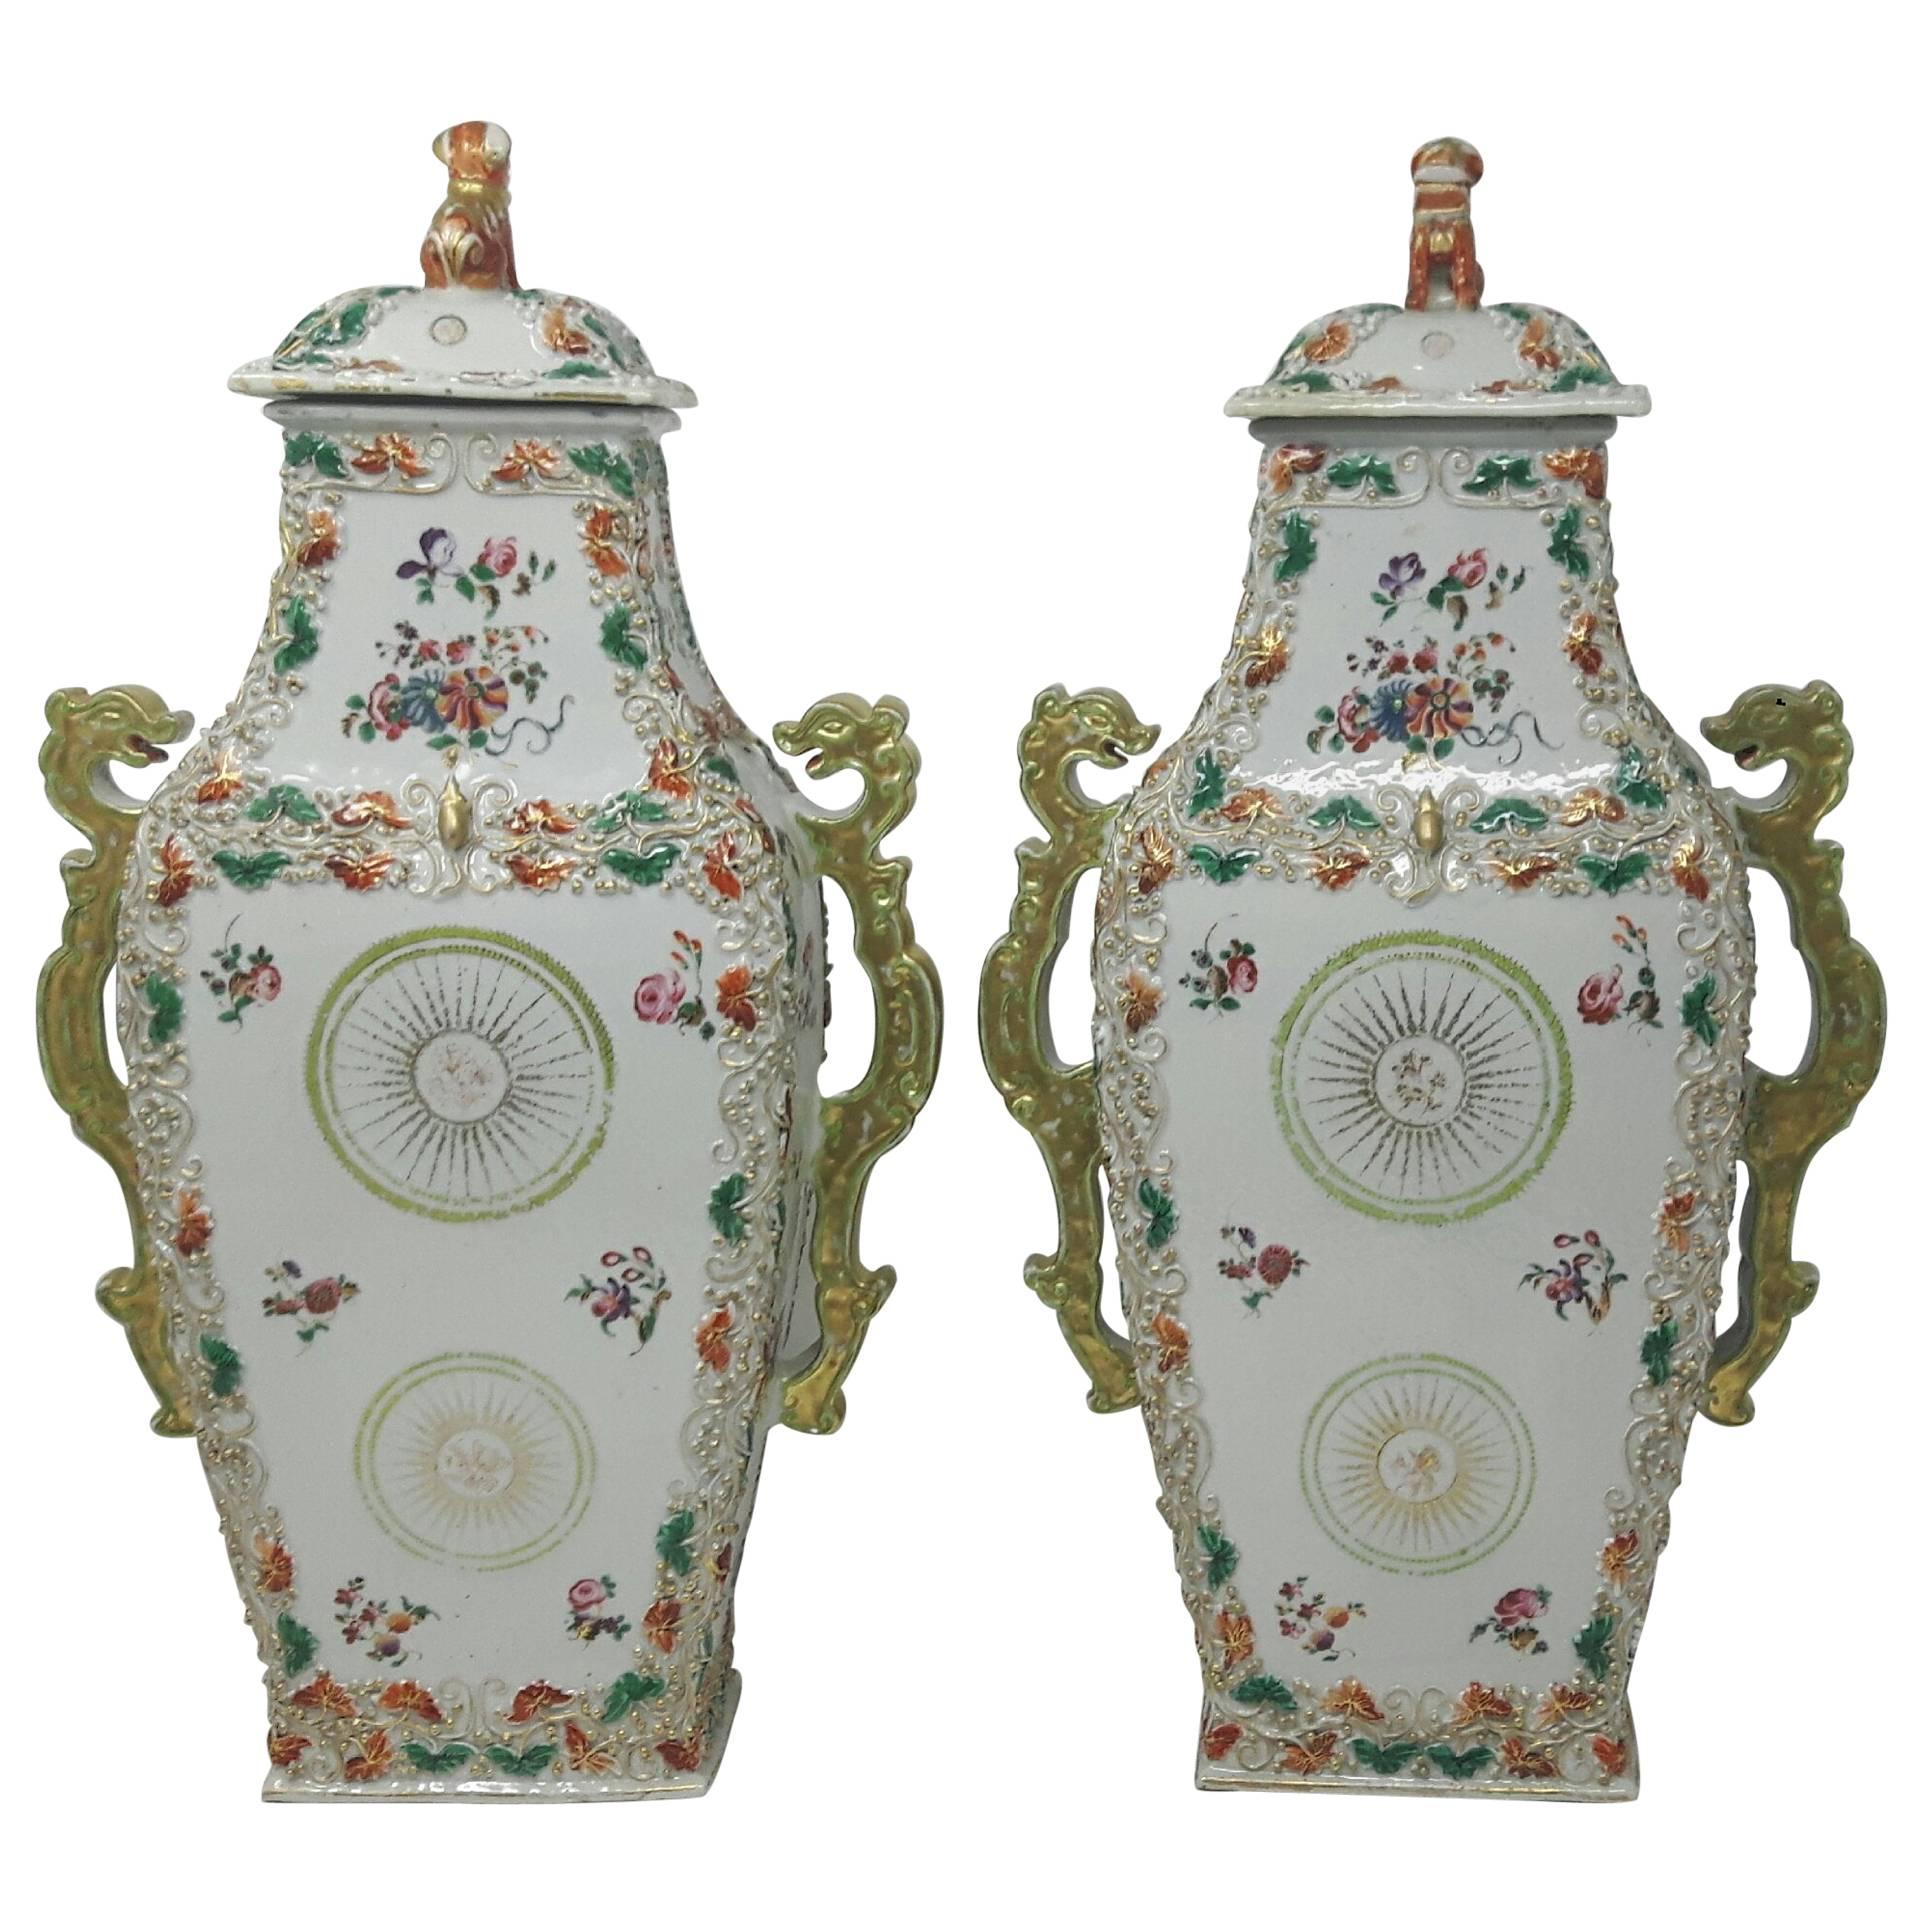 Chinesische Famille-Rose-Vasen aus dem 18. Jahrhundert, um 1750